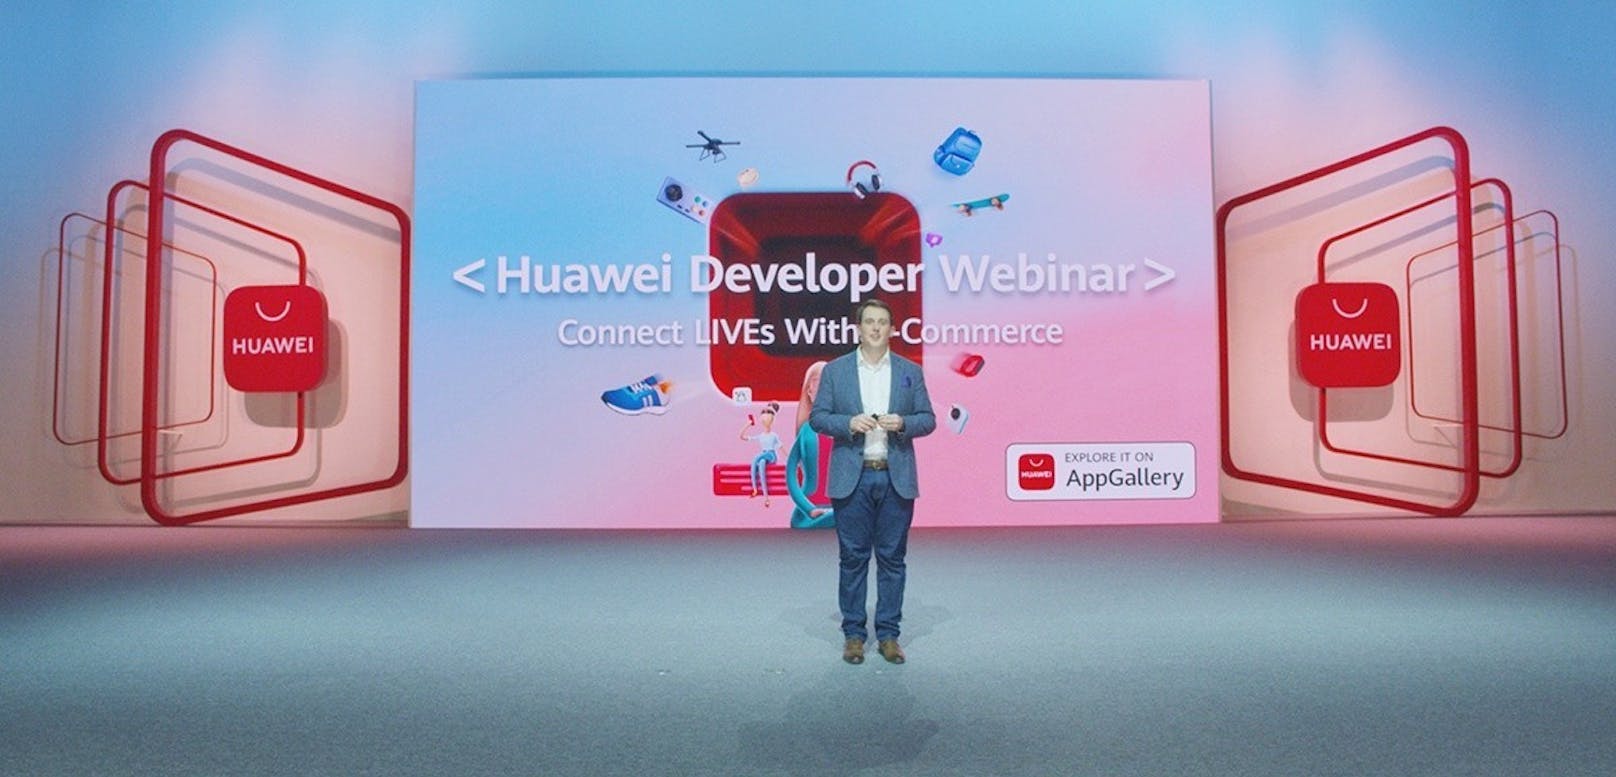 Verbesserte Technologien für Huawei Mobile Services bieten ein intelligenteres Live-Streaming-Erlebnis auf E-Commerce-Plattformen.